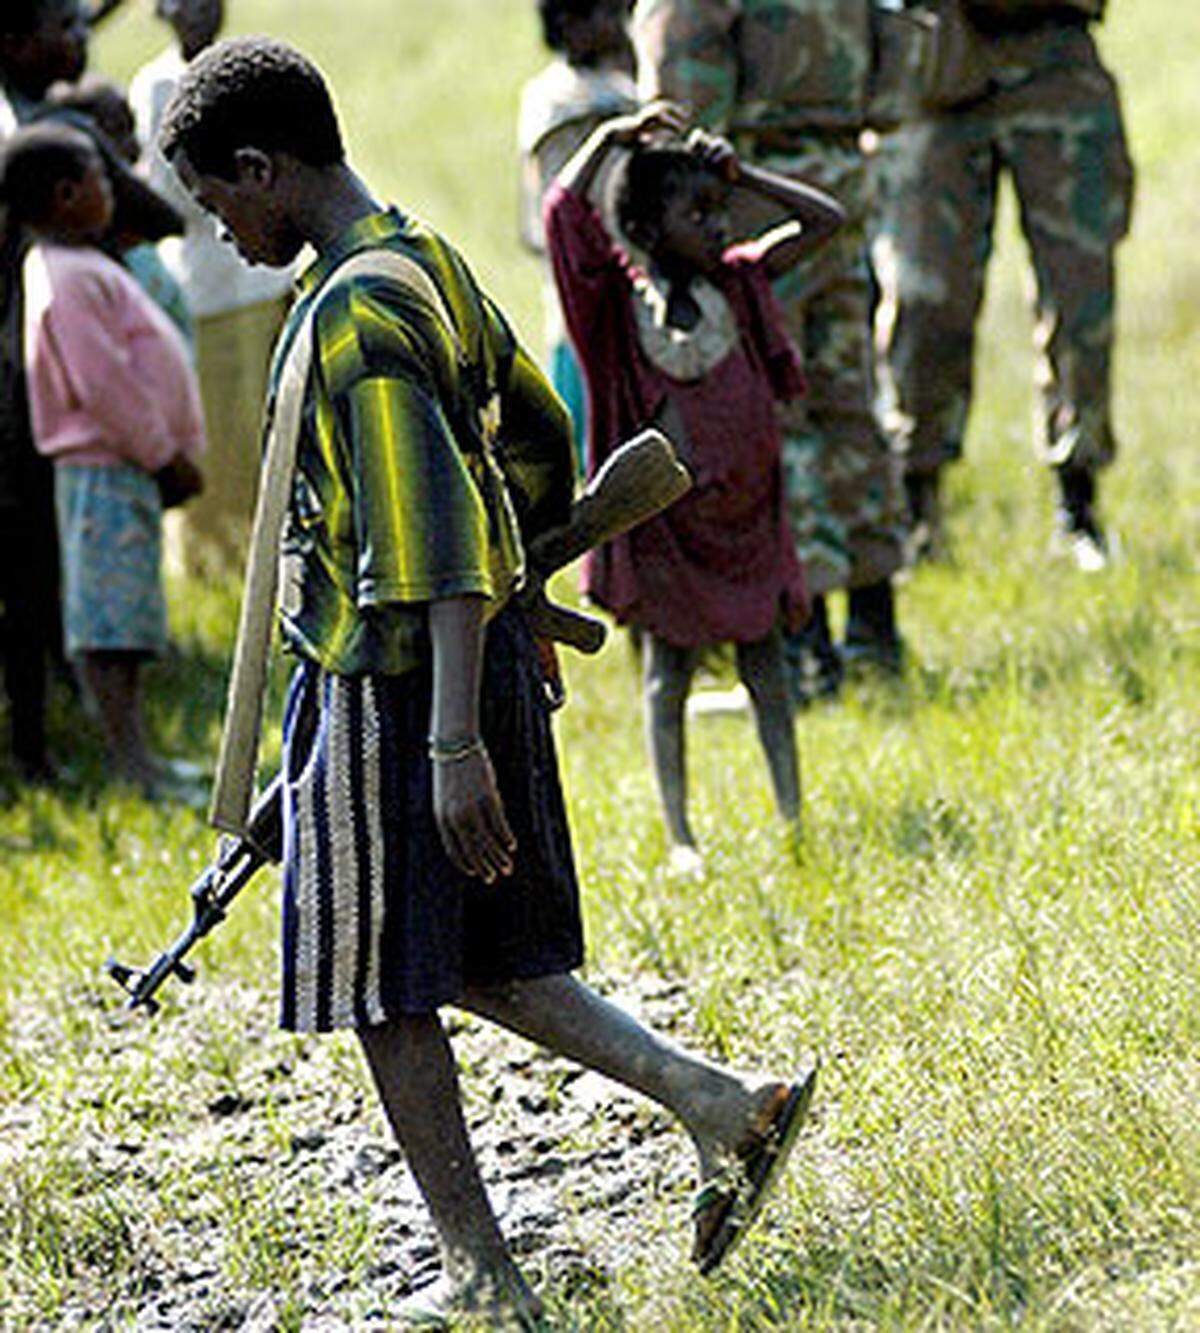 Rund 300.000 Kinder sind gegenwärtig in knapp 30 bewaffneten Konflikten als Soldaten im Einsatz, berichten die Menschenrechtsorganisationen amnesty international und terre des hommes. Im Bild: Ein Kindersoldat der Mai Mai Milizen im Ost-Kongo, 2004